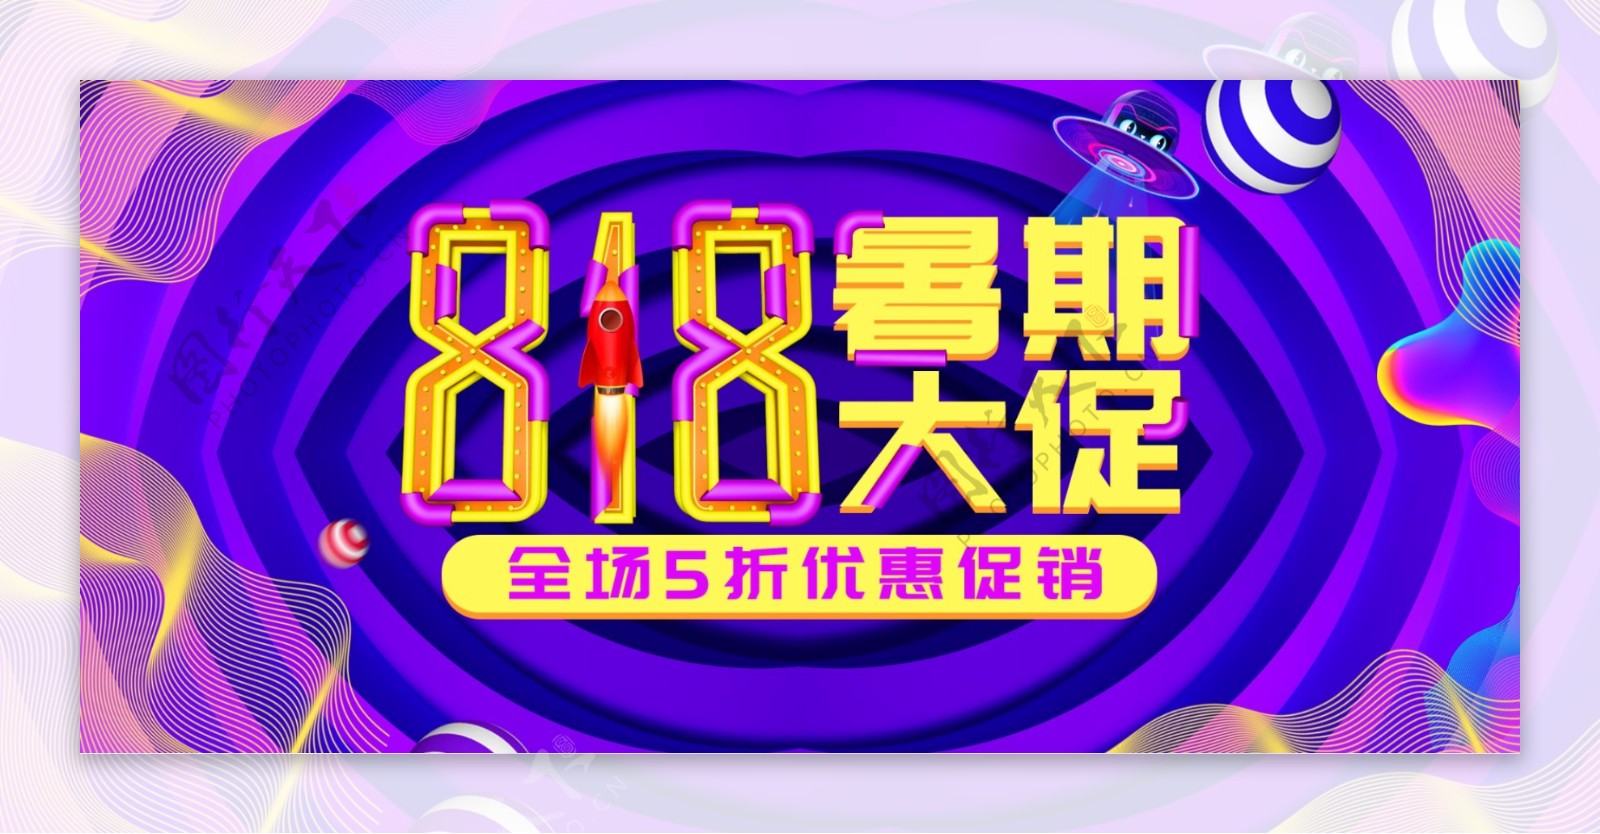 紫炫酷线条818暑期大促电商banner